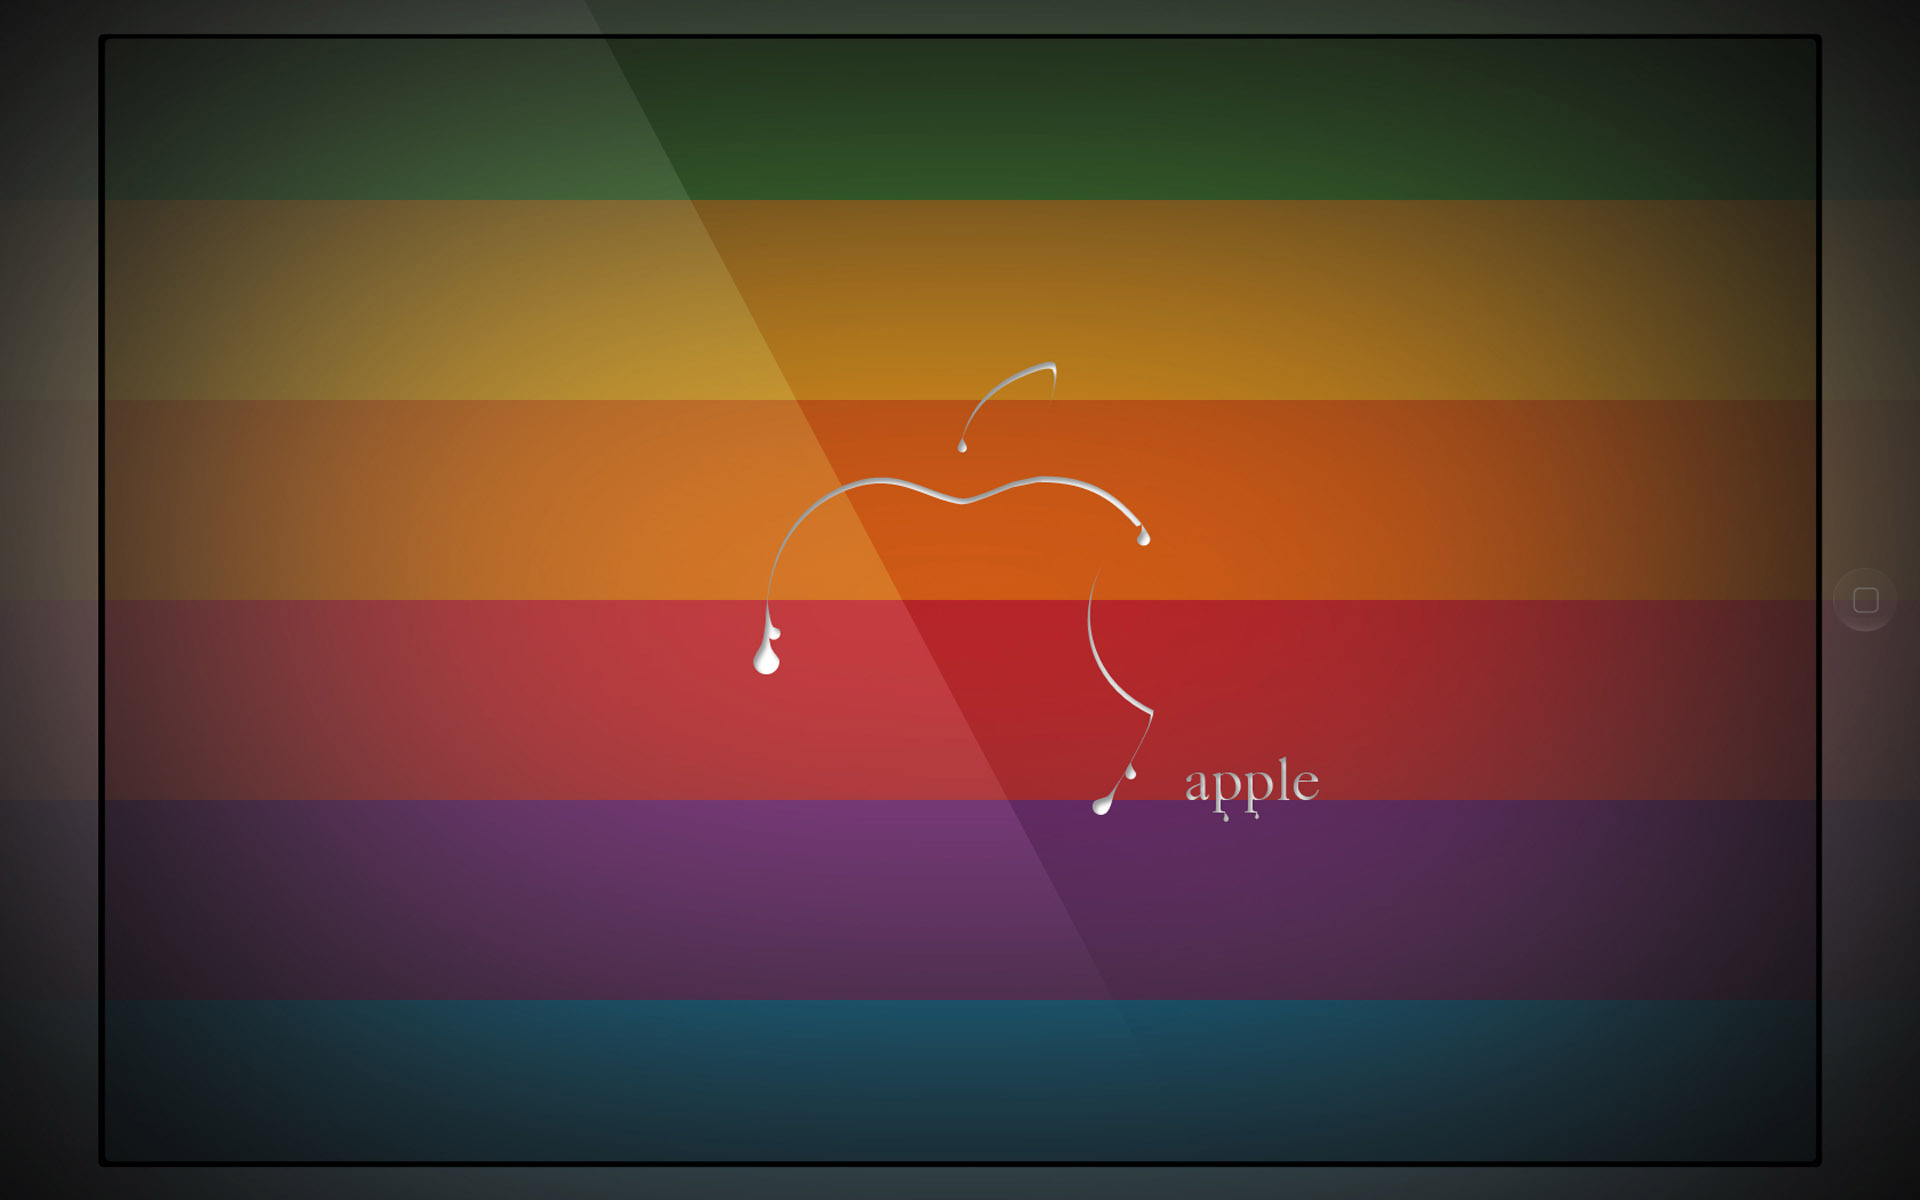 Apple Mac Wallpapers » Animaatjes.nl